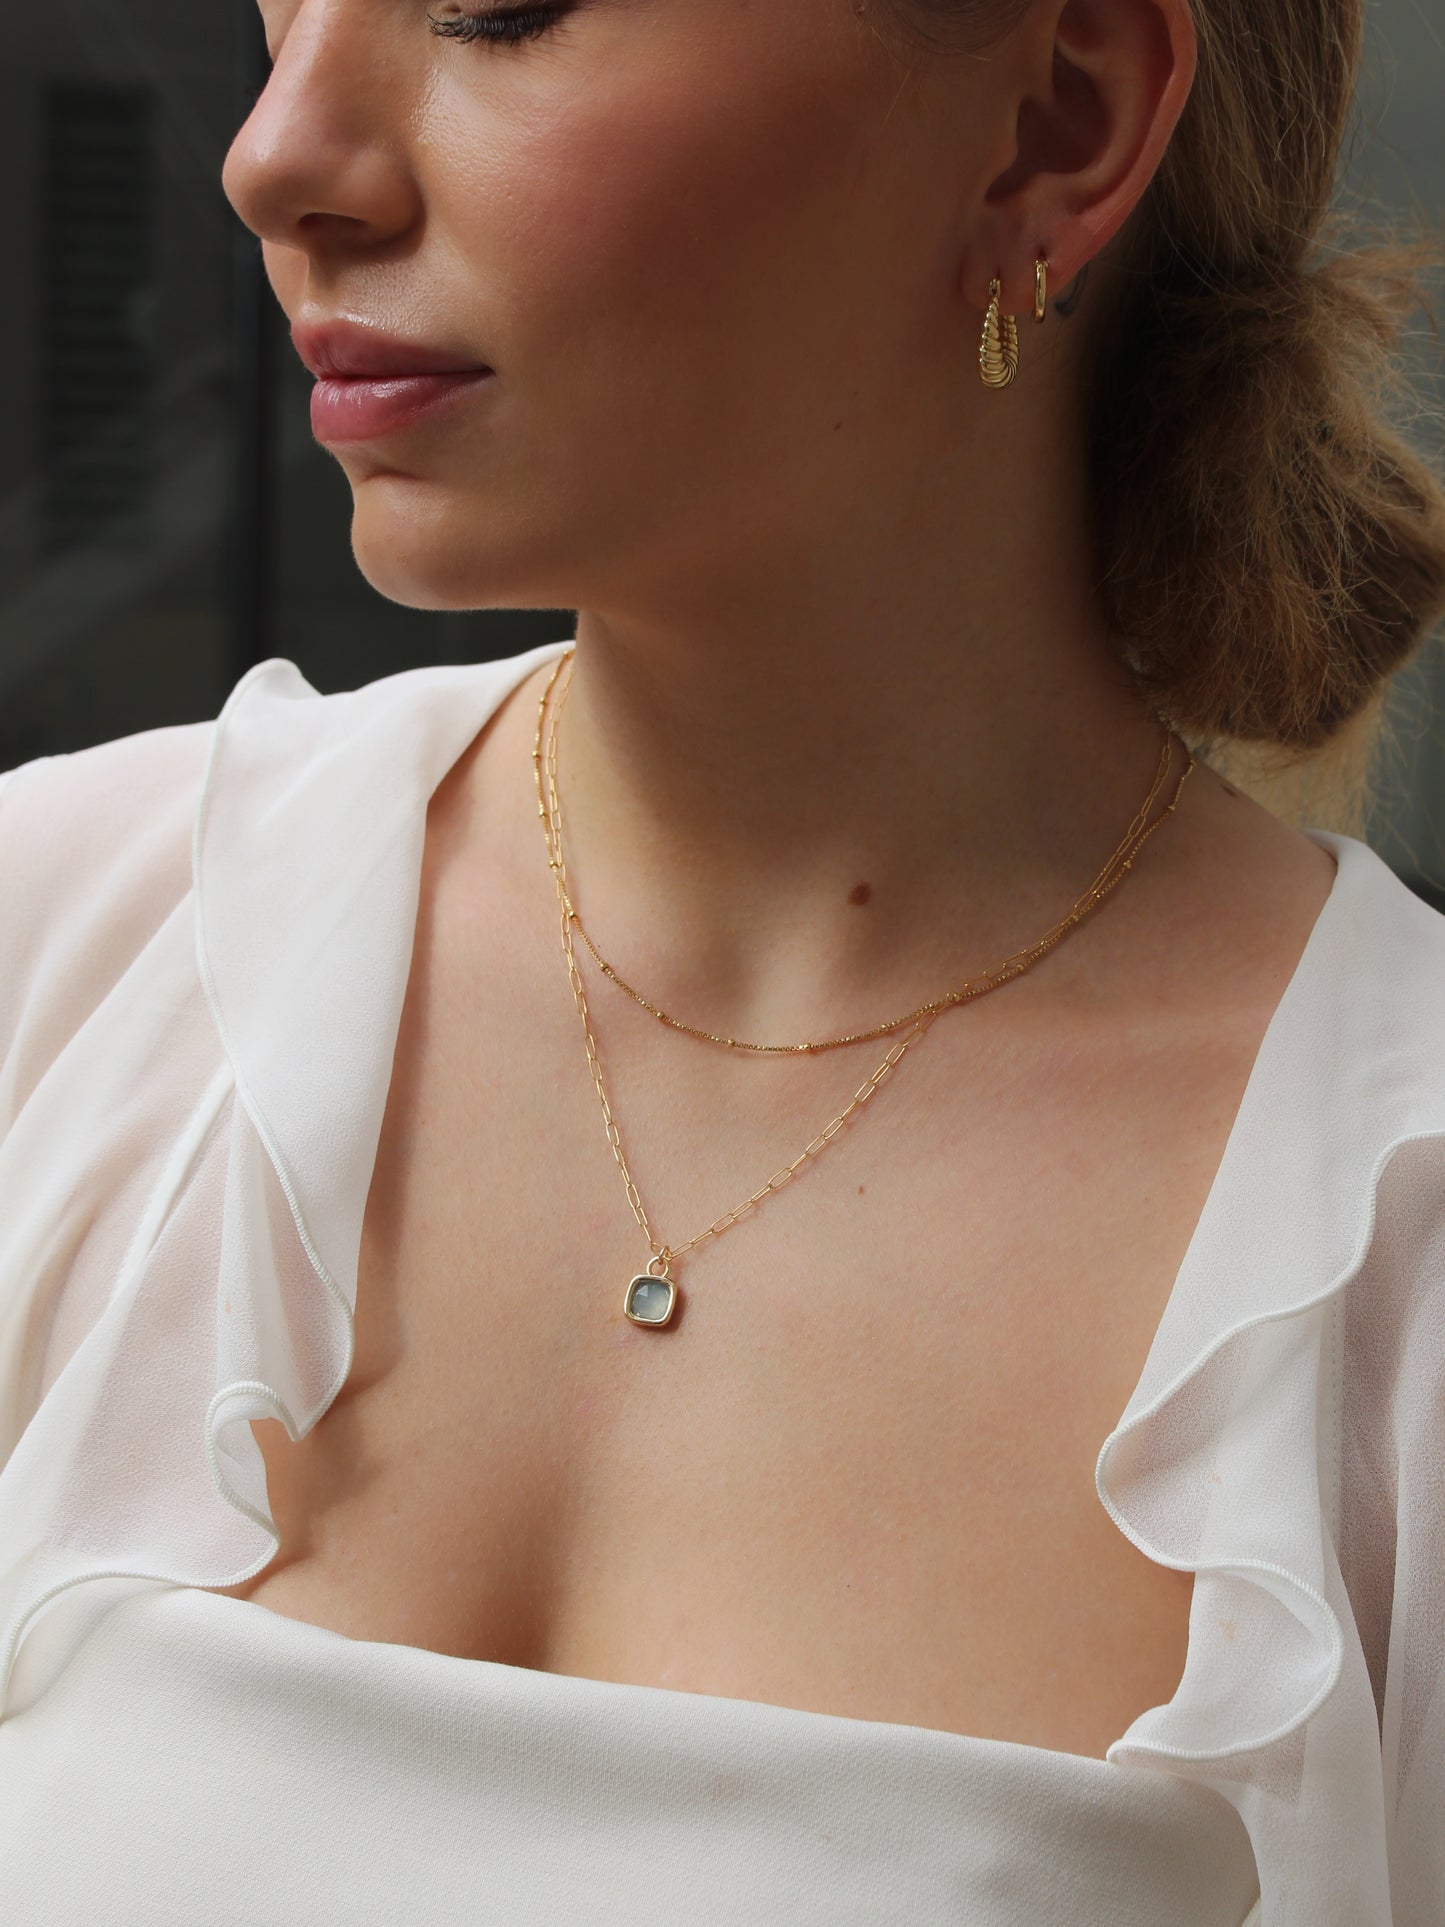 Dainty aquamarine necklace